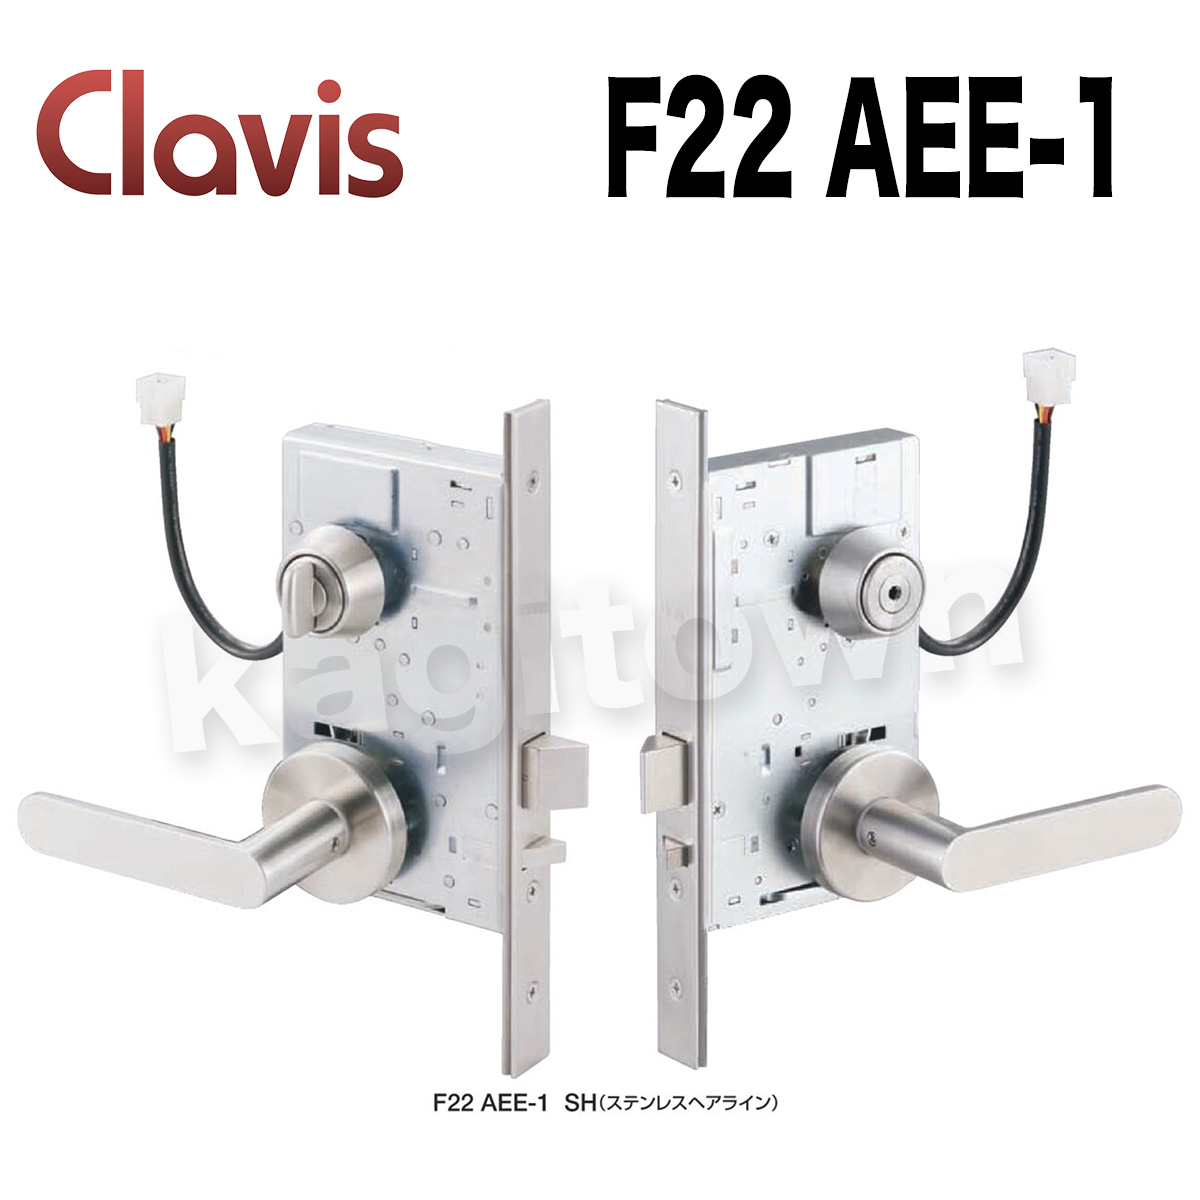 Clavis F22 AEE-1【クラビス】レバーハンドル錠型機能切替電気錠 納期1~4週間 AEE/AEEP/AEN/AENP